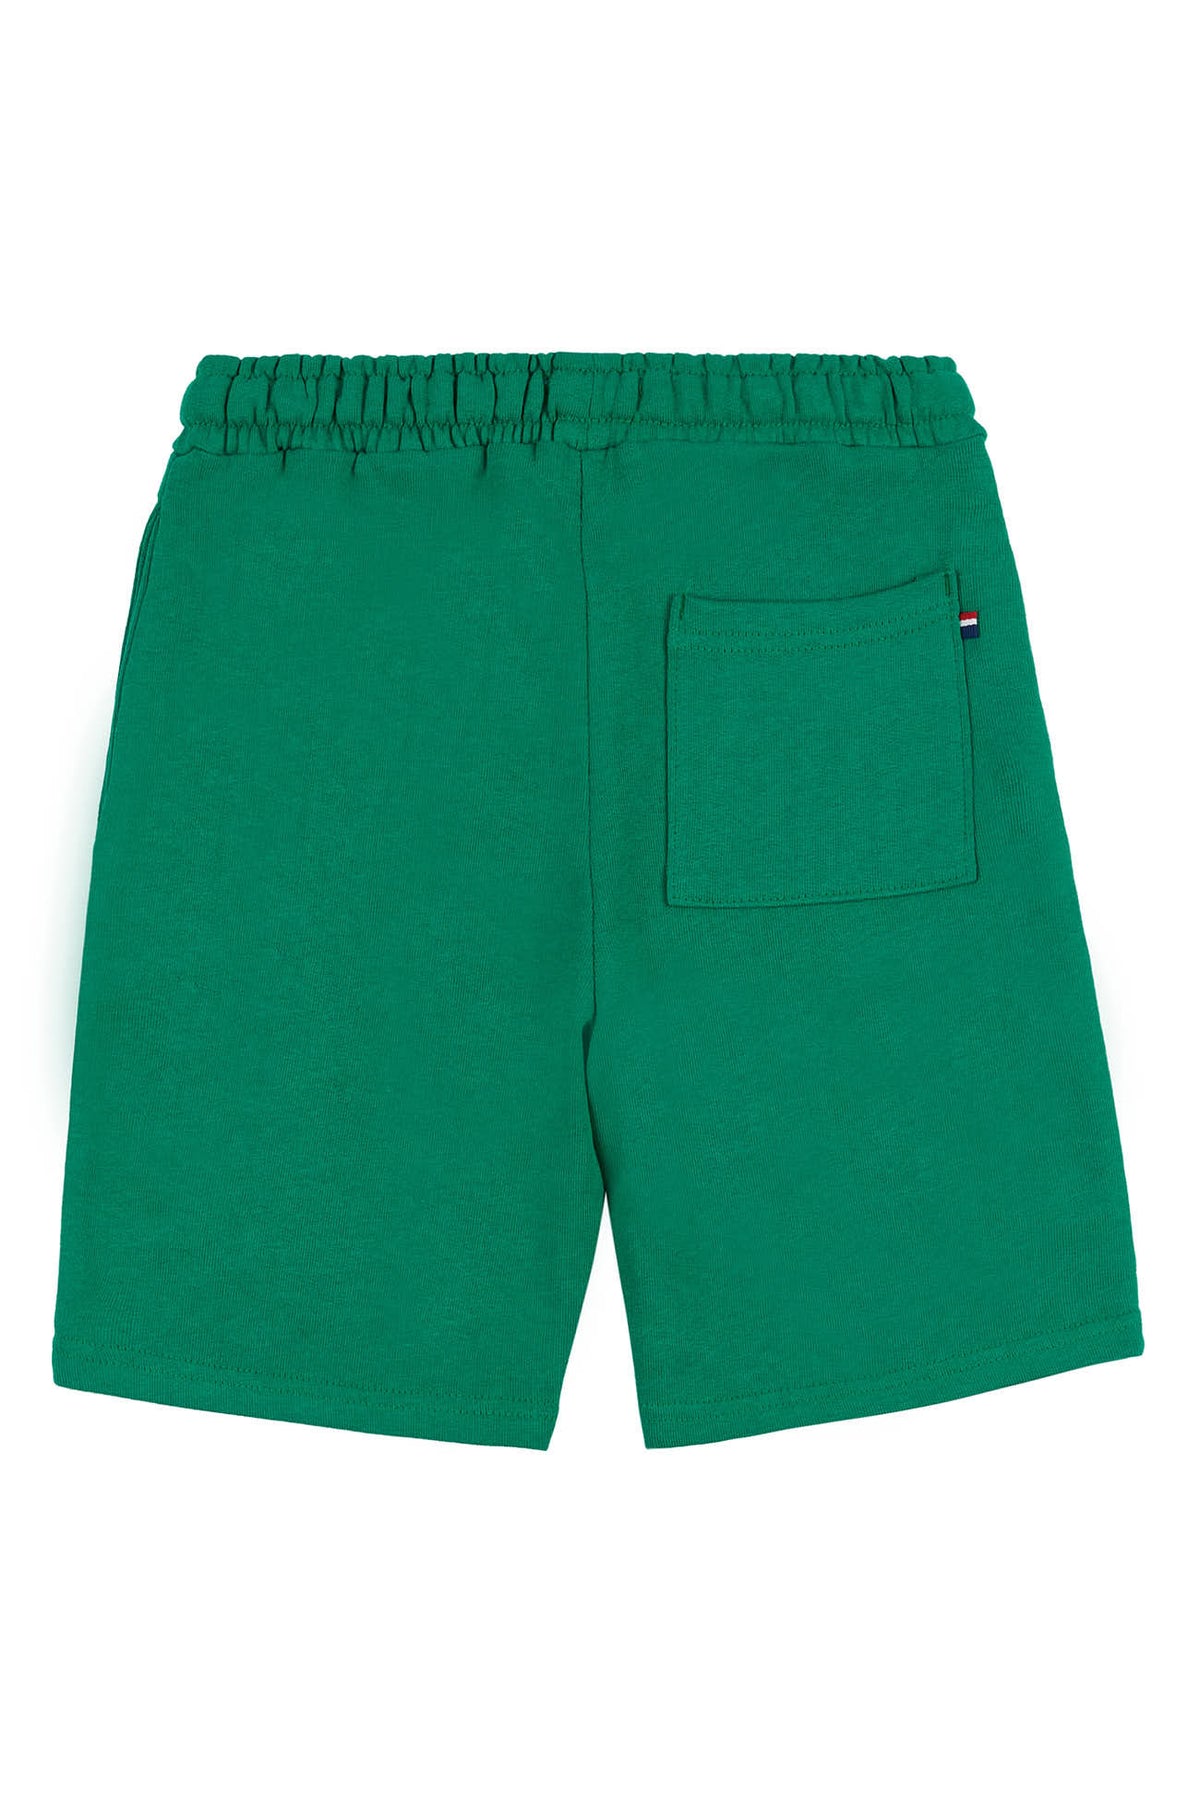 Boys Player 3 Sweat Shorts in Ultramarine Green